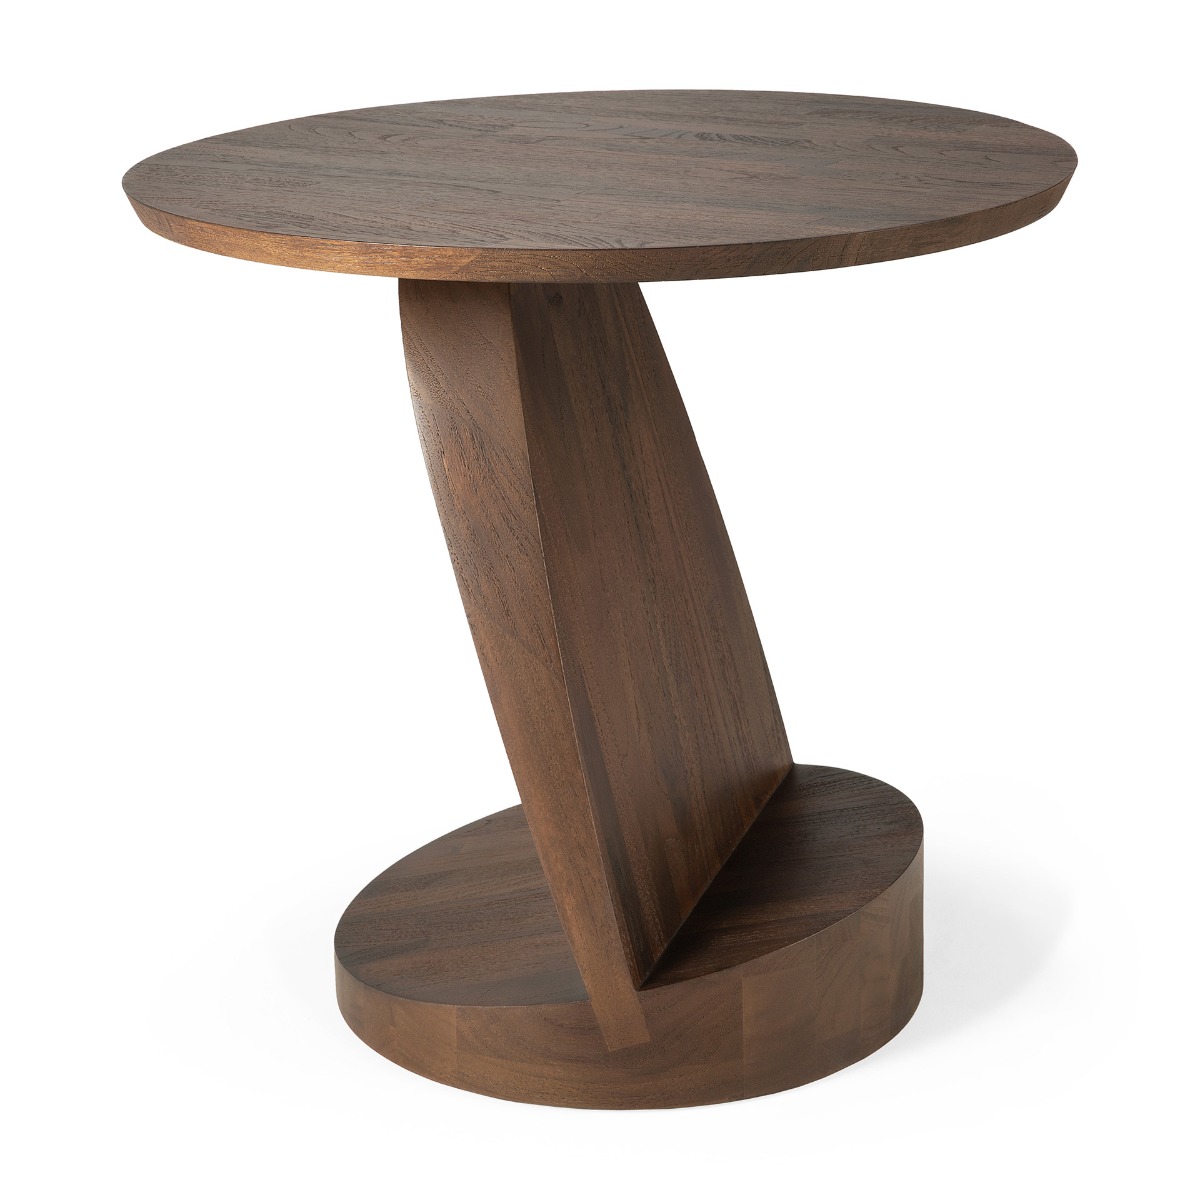 Oblic side table in teak brown